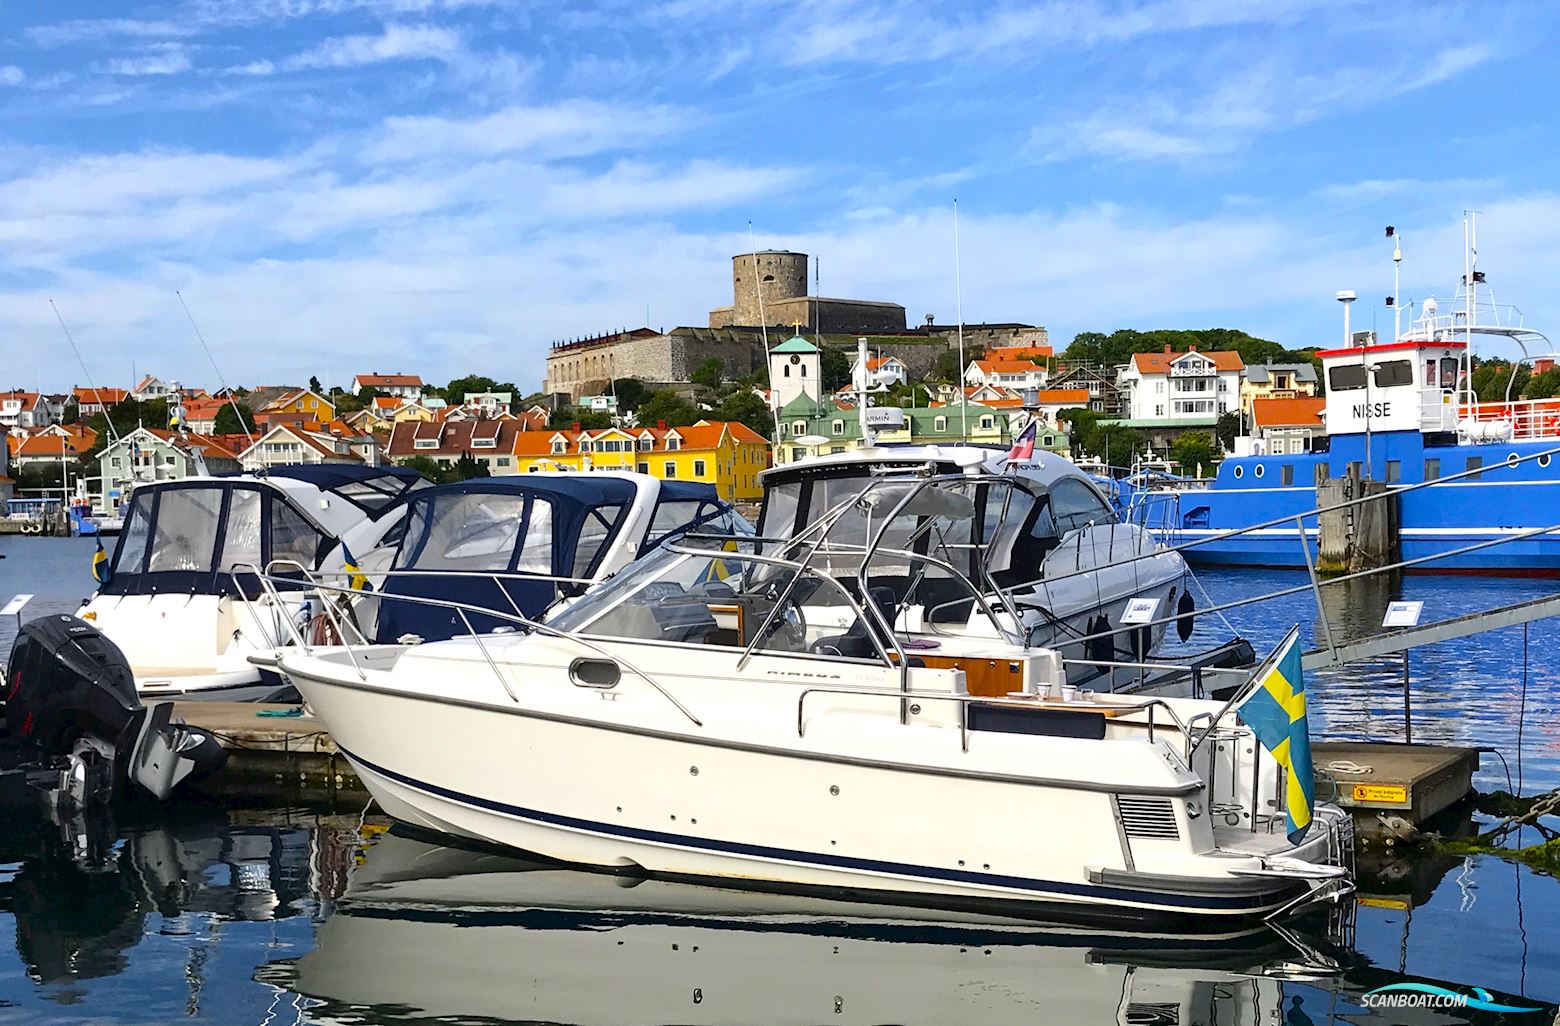 Nimbus 27 Nova S Motorbåt 2015, Sverige